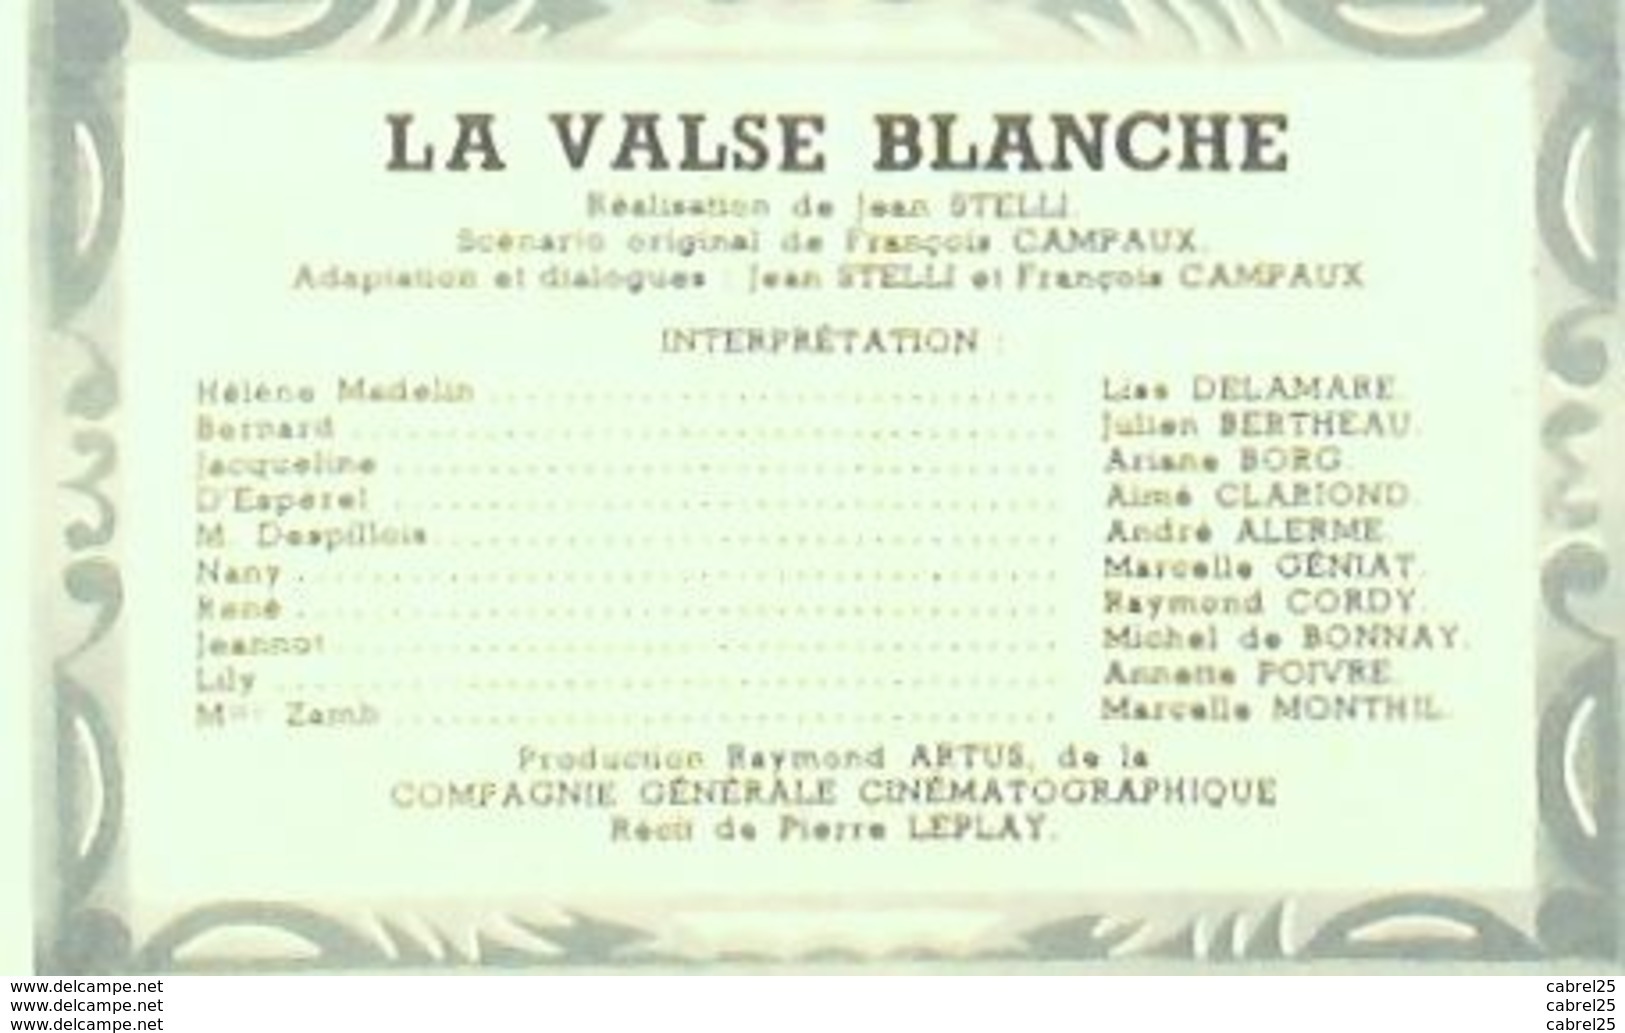 CINEMA-LA VALSE BLANCHE-ARIANE BORG-LISE DELAMARE-JULIEN BERTHEAU-MF 217-1950 - Cinéma